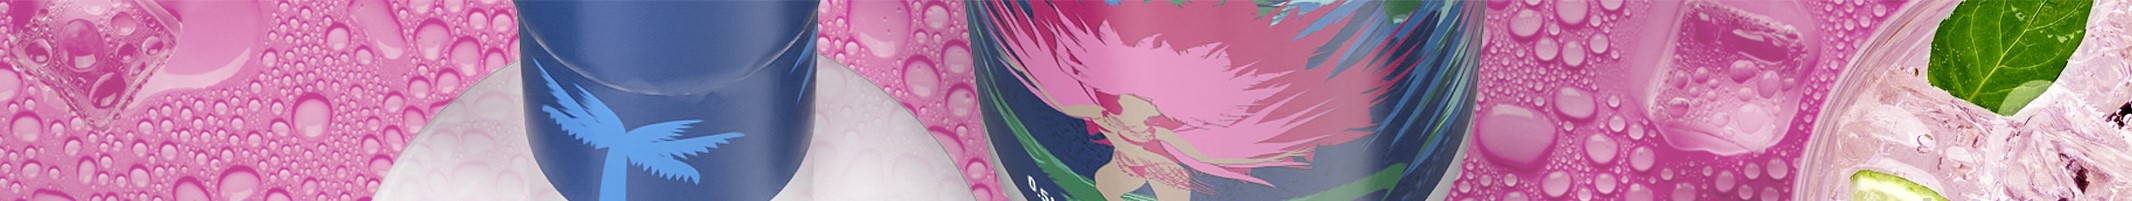 Karneval Vodka Banner mit pinkem Hintergrund